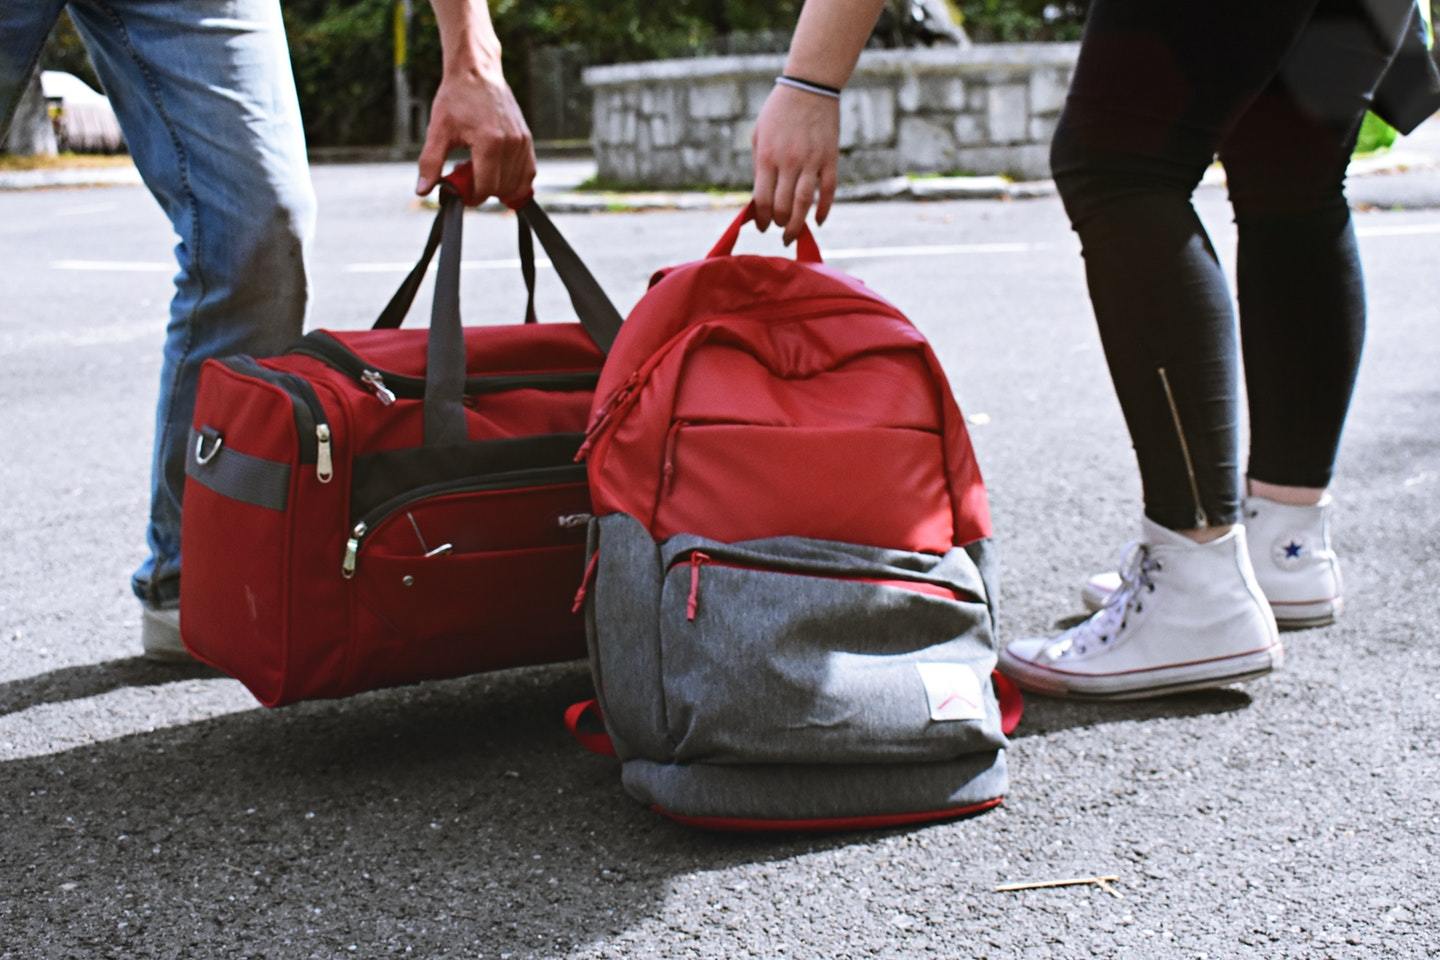 duffel bag and backpack